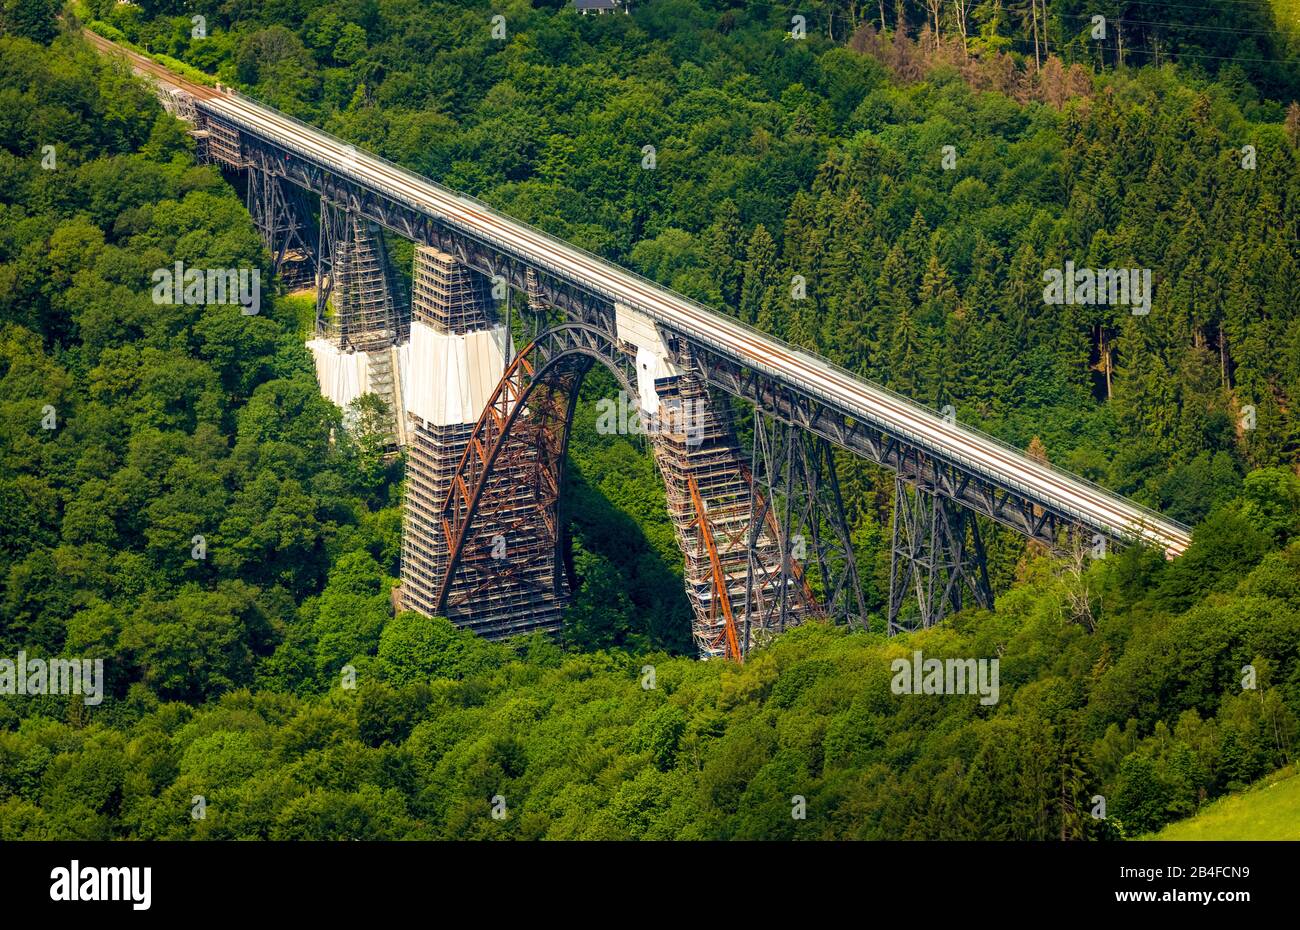 Vue aérienne du pont ferroviaire pont Müngstener autrefois le pont Kaiser Wilhelm est le pont ferroviaire le plus élevé d'Allemagne sur le Wupper est en cours de rénovation à Solingen dans l'État allemand de Rhénanie-du-Nord-Westphalie, Allemagne, Rhénanie, Europe, le pont ferroviaire le plus élevé d'Allemagne, pont ferroviaire historique, pont de fer Banque D'Images